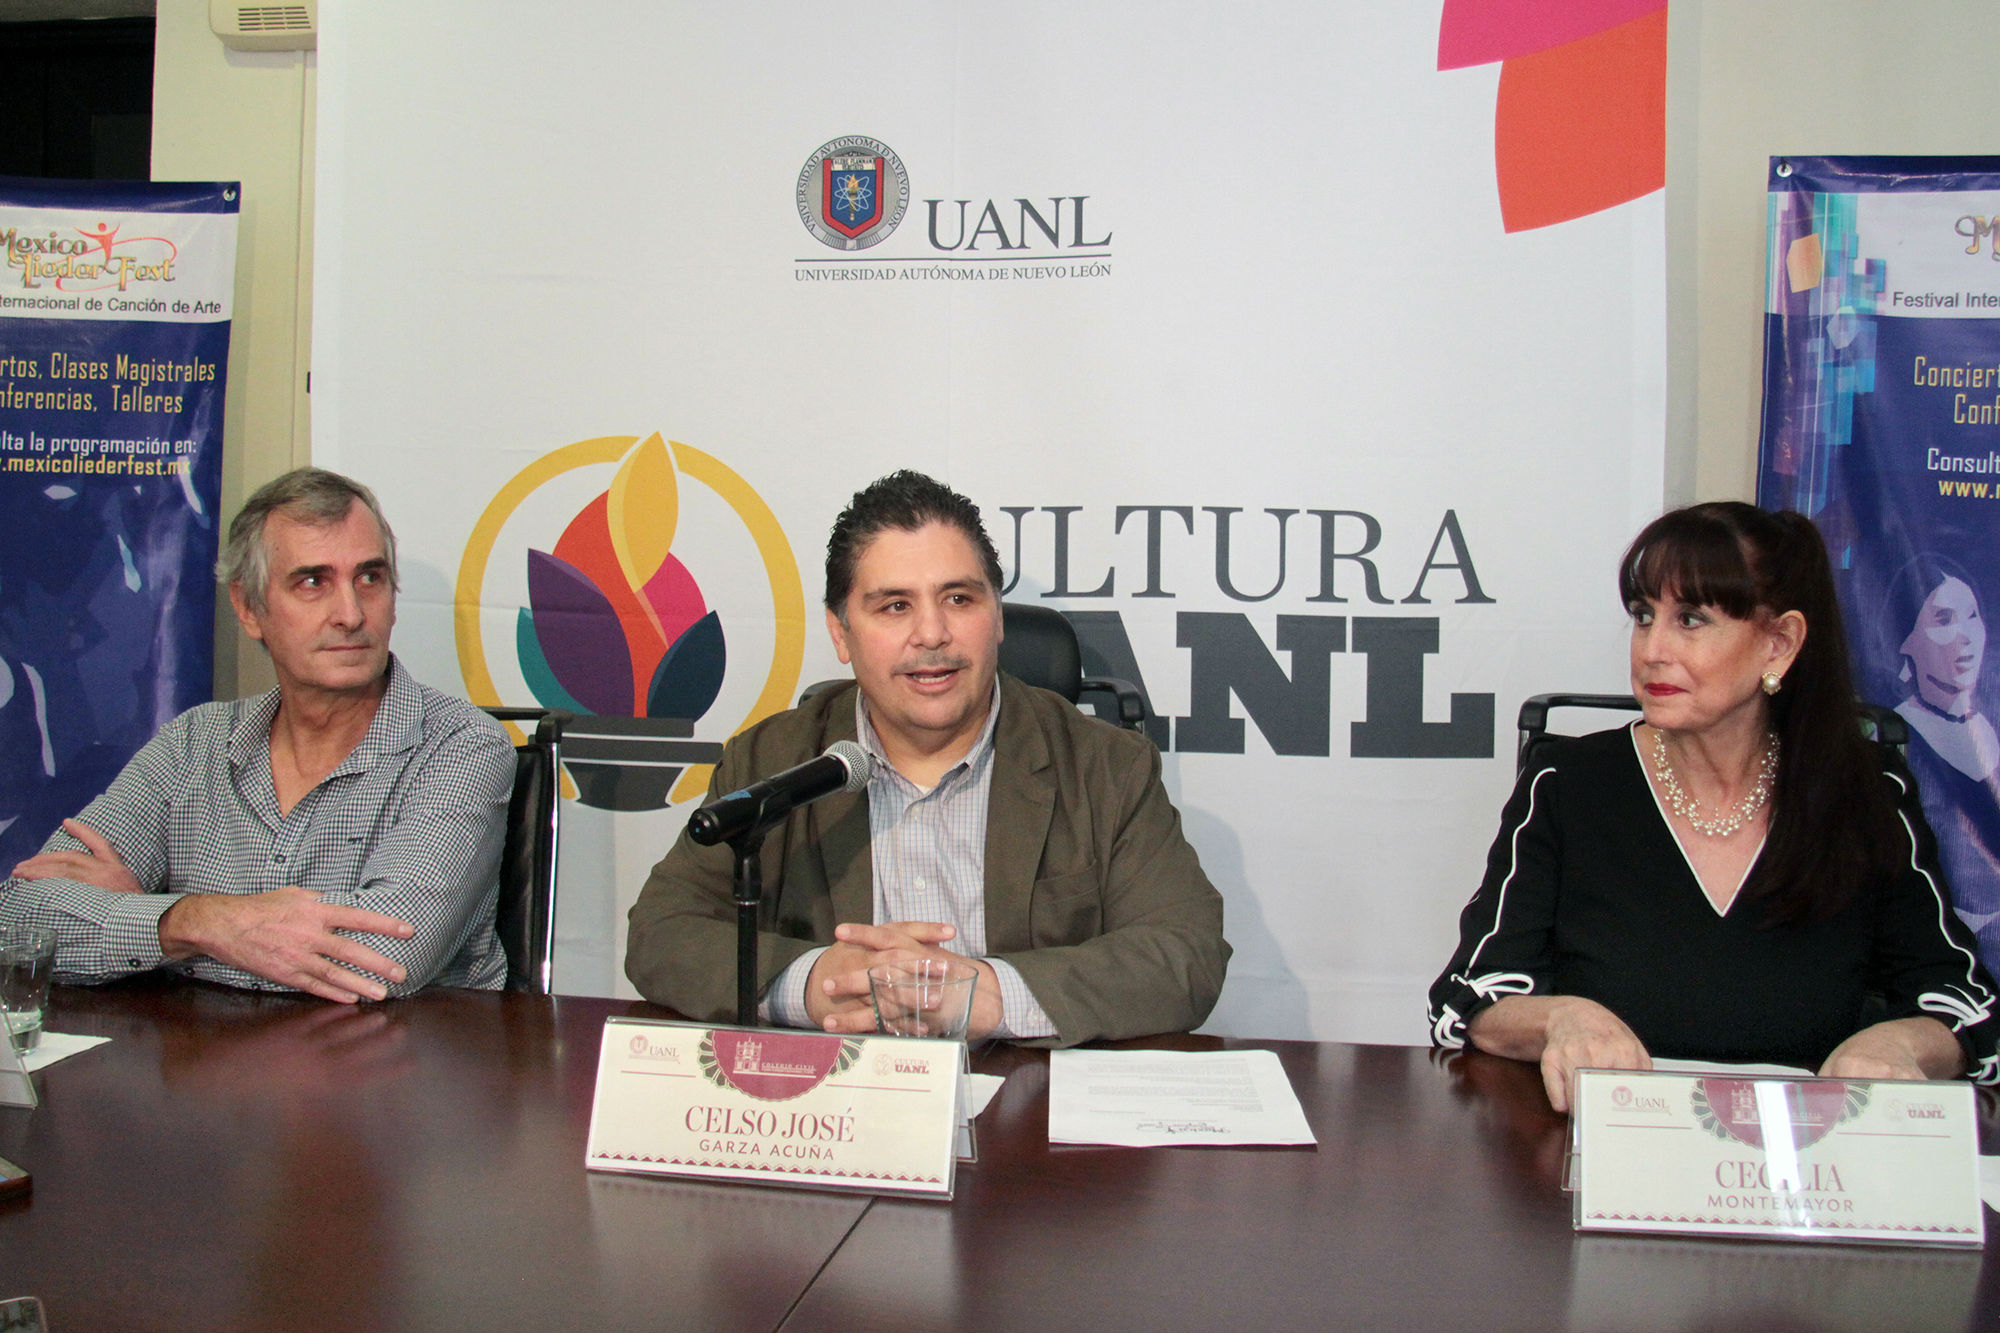 Abrirá Festival Internacional de Música de Arte en la UANL